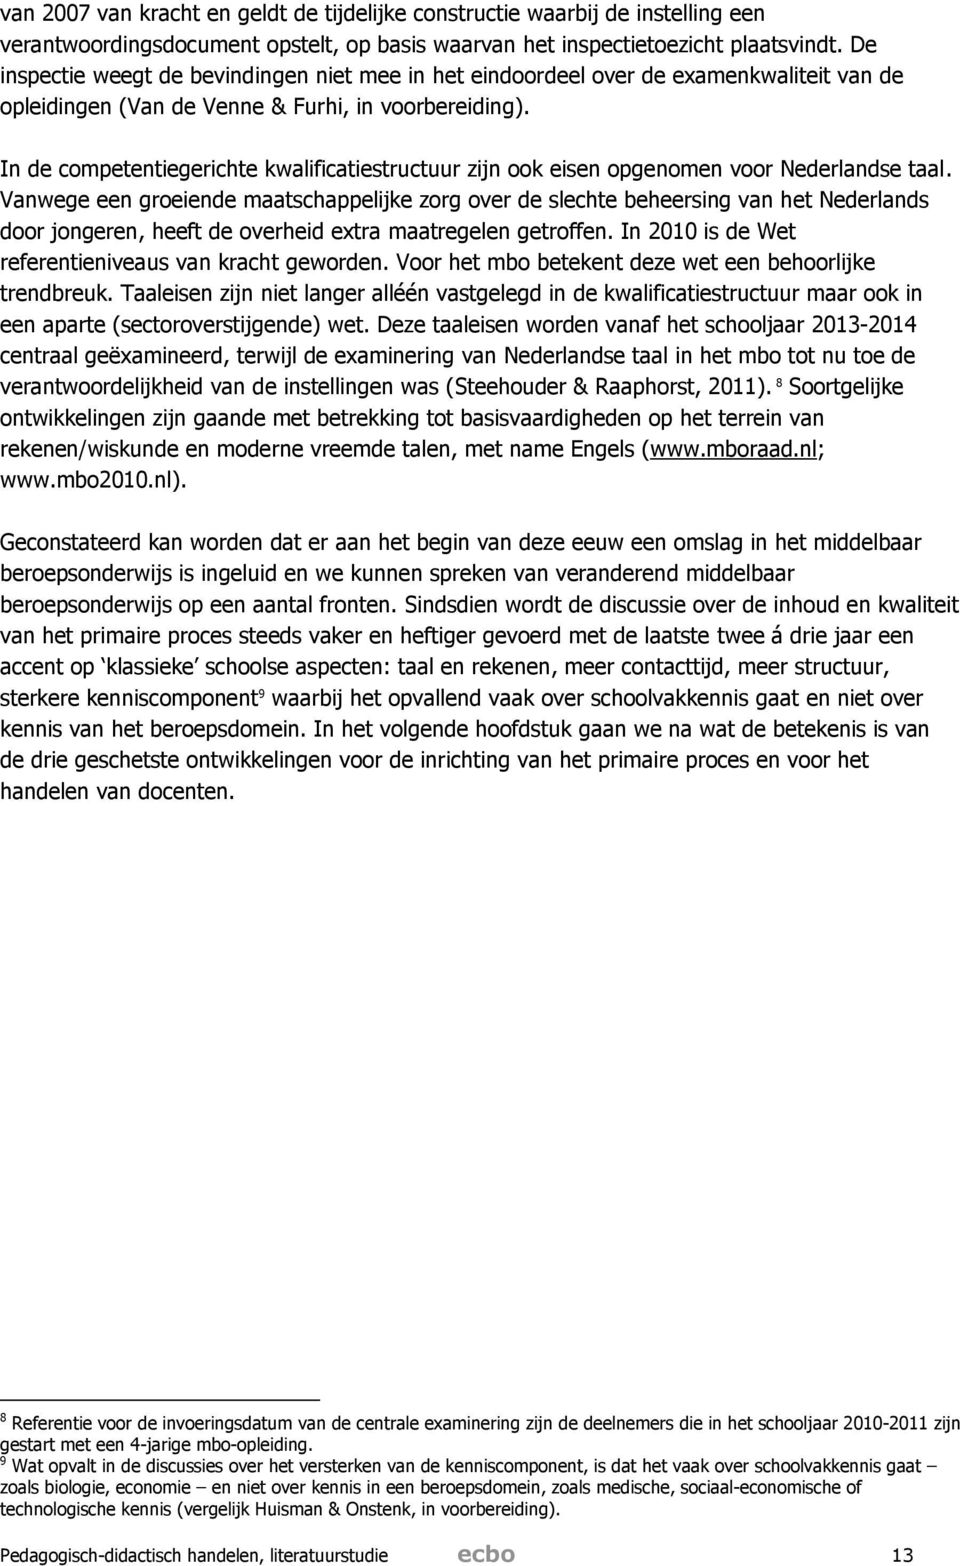 In de competentiegerichte kwalificatiestructuur zijn ook eisen opgenomen voor Nederlandse taal.